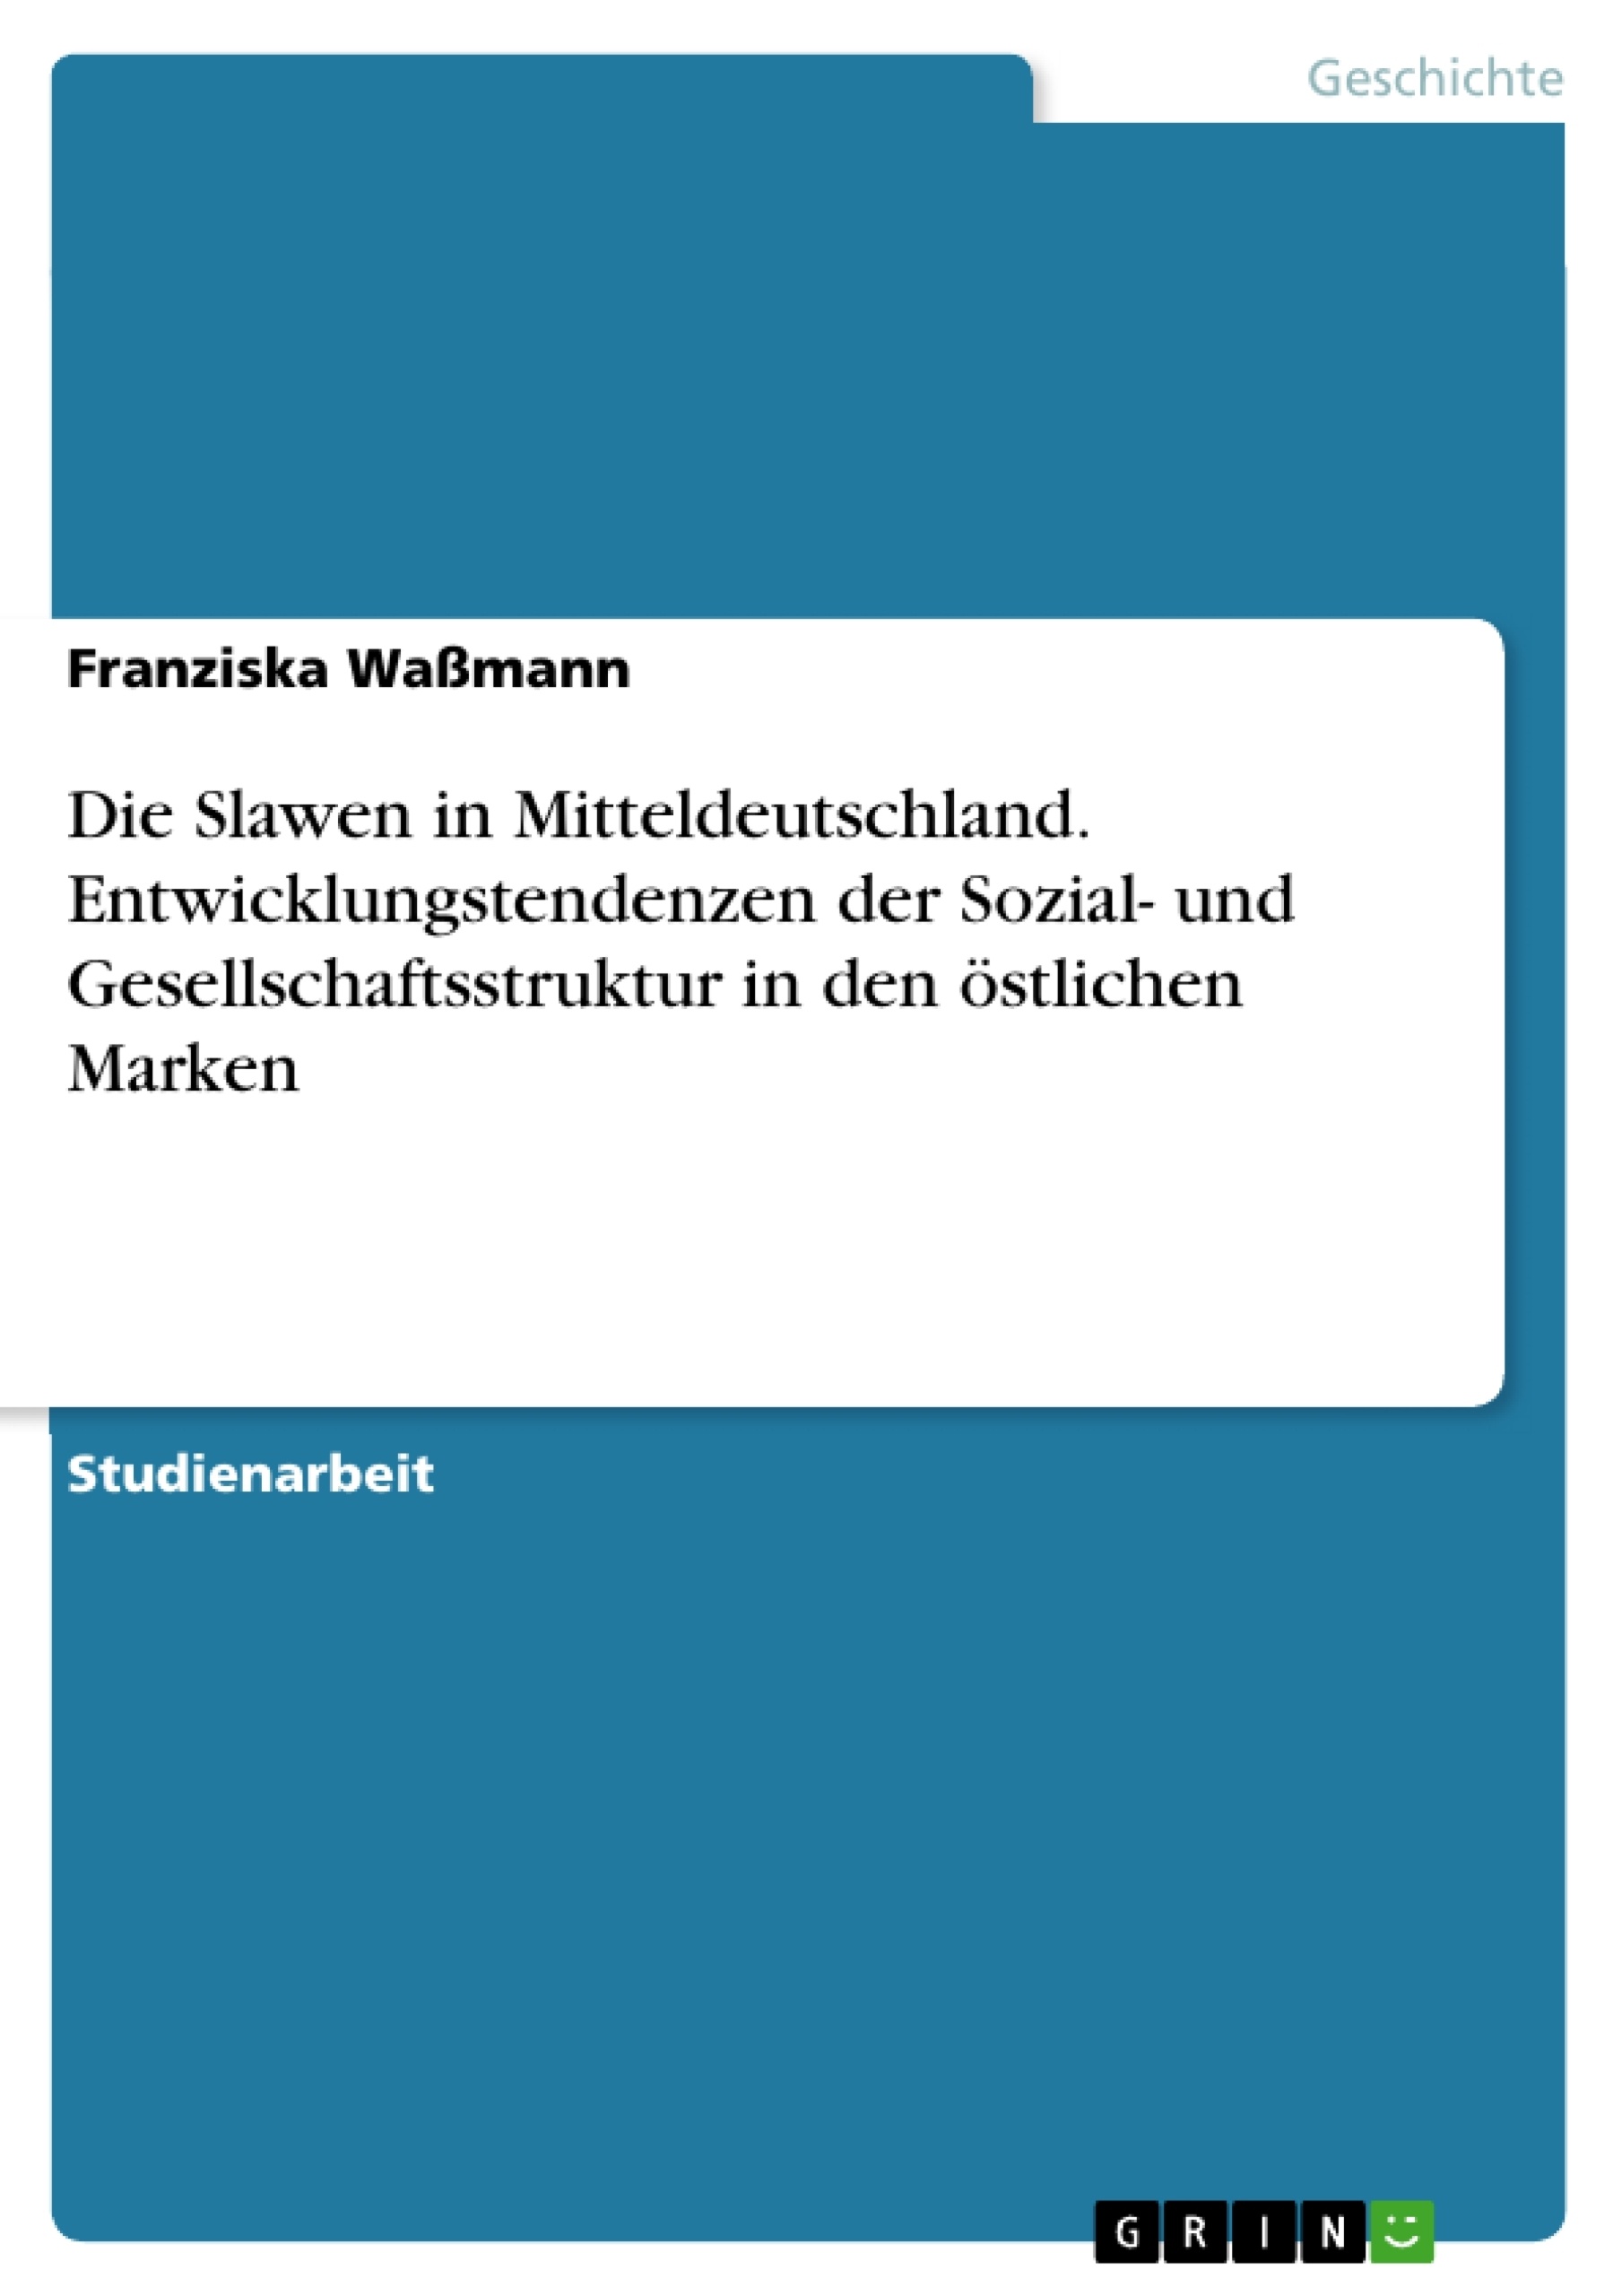 Title: Die Slawen in Mitteldeutschland. Entwicklungstendenzen der Sozial- und Gesellschaftsstruktur in den östlichen Marken